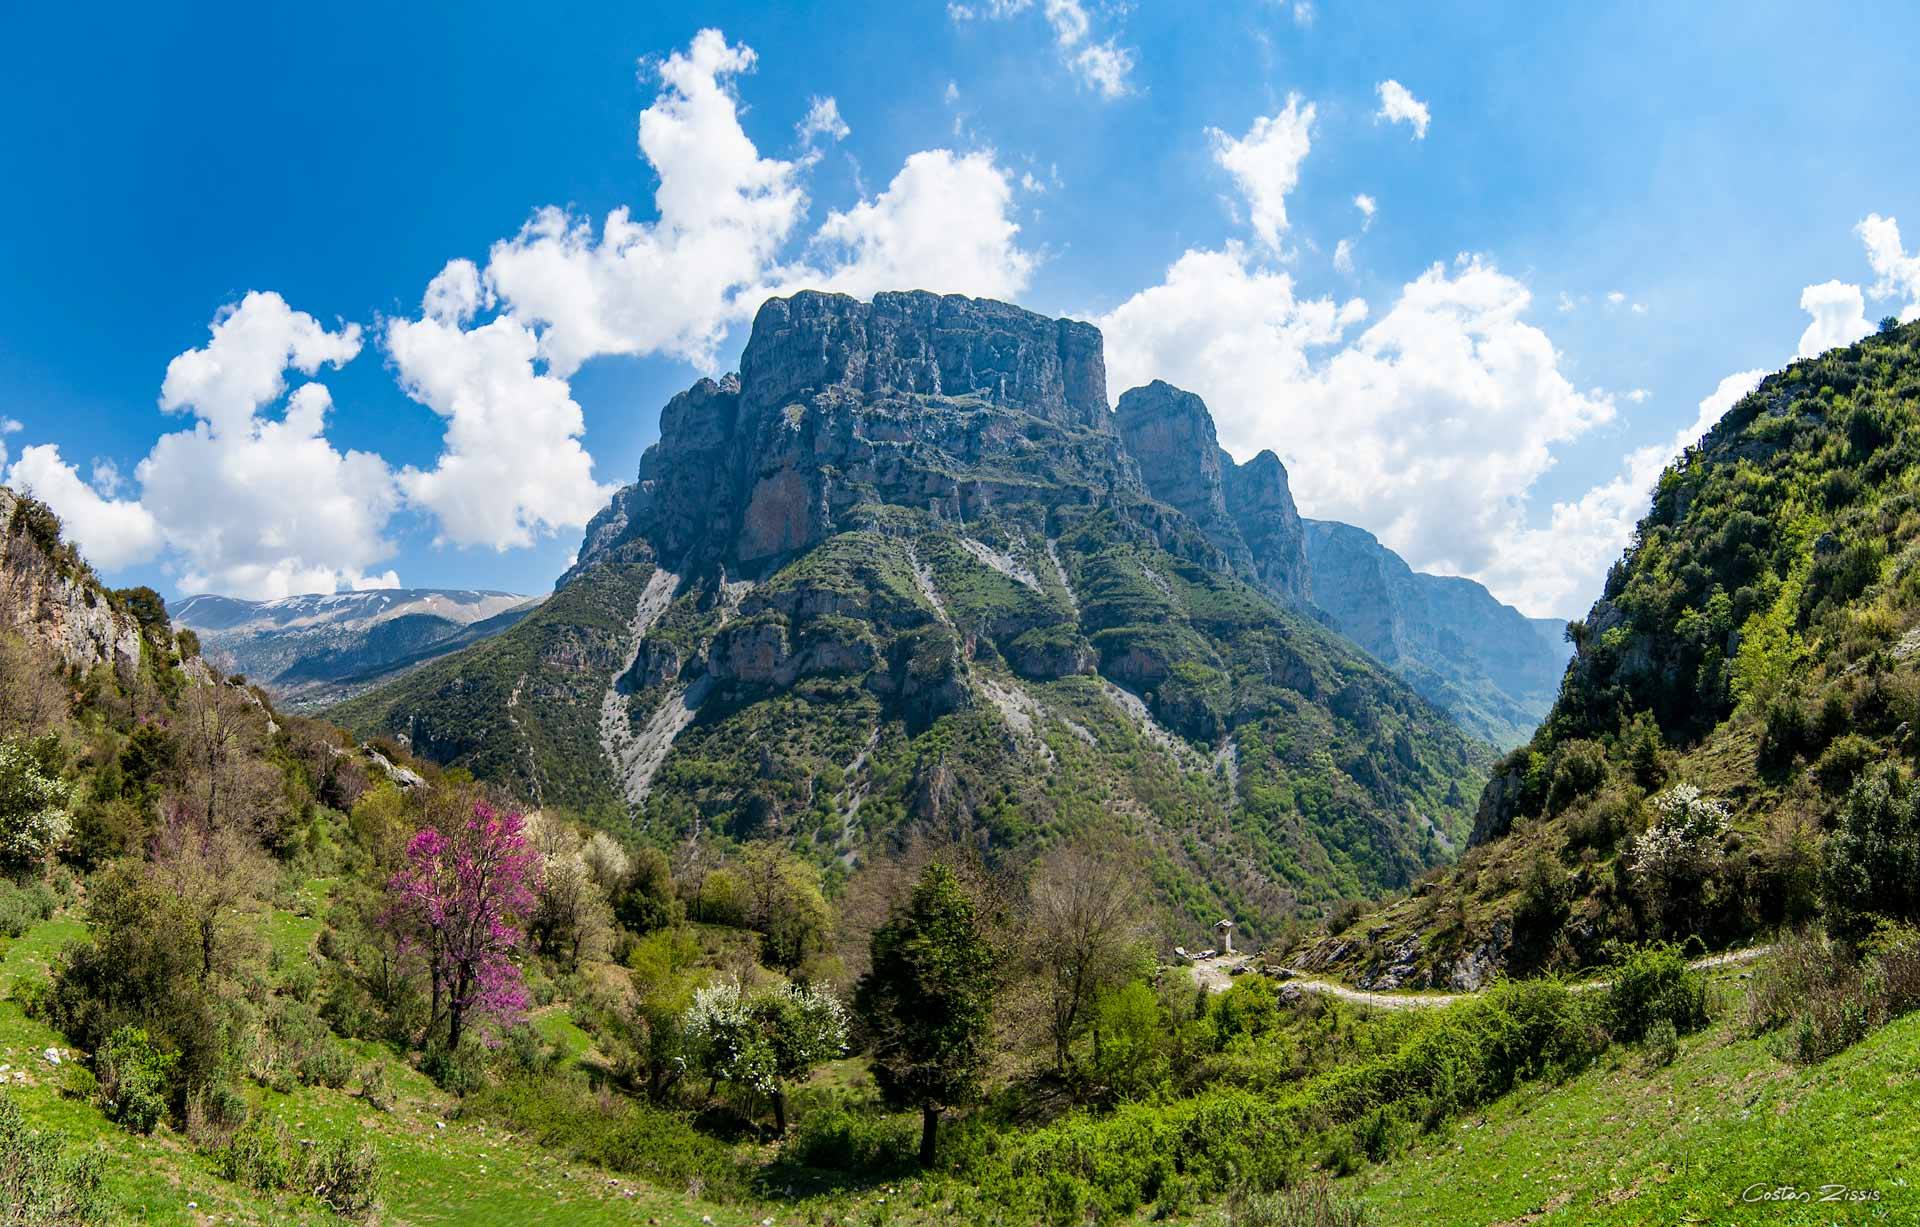 ההרים של יוון וגם מעט סכנות שצריך לקחת בחשבון